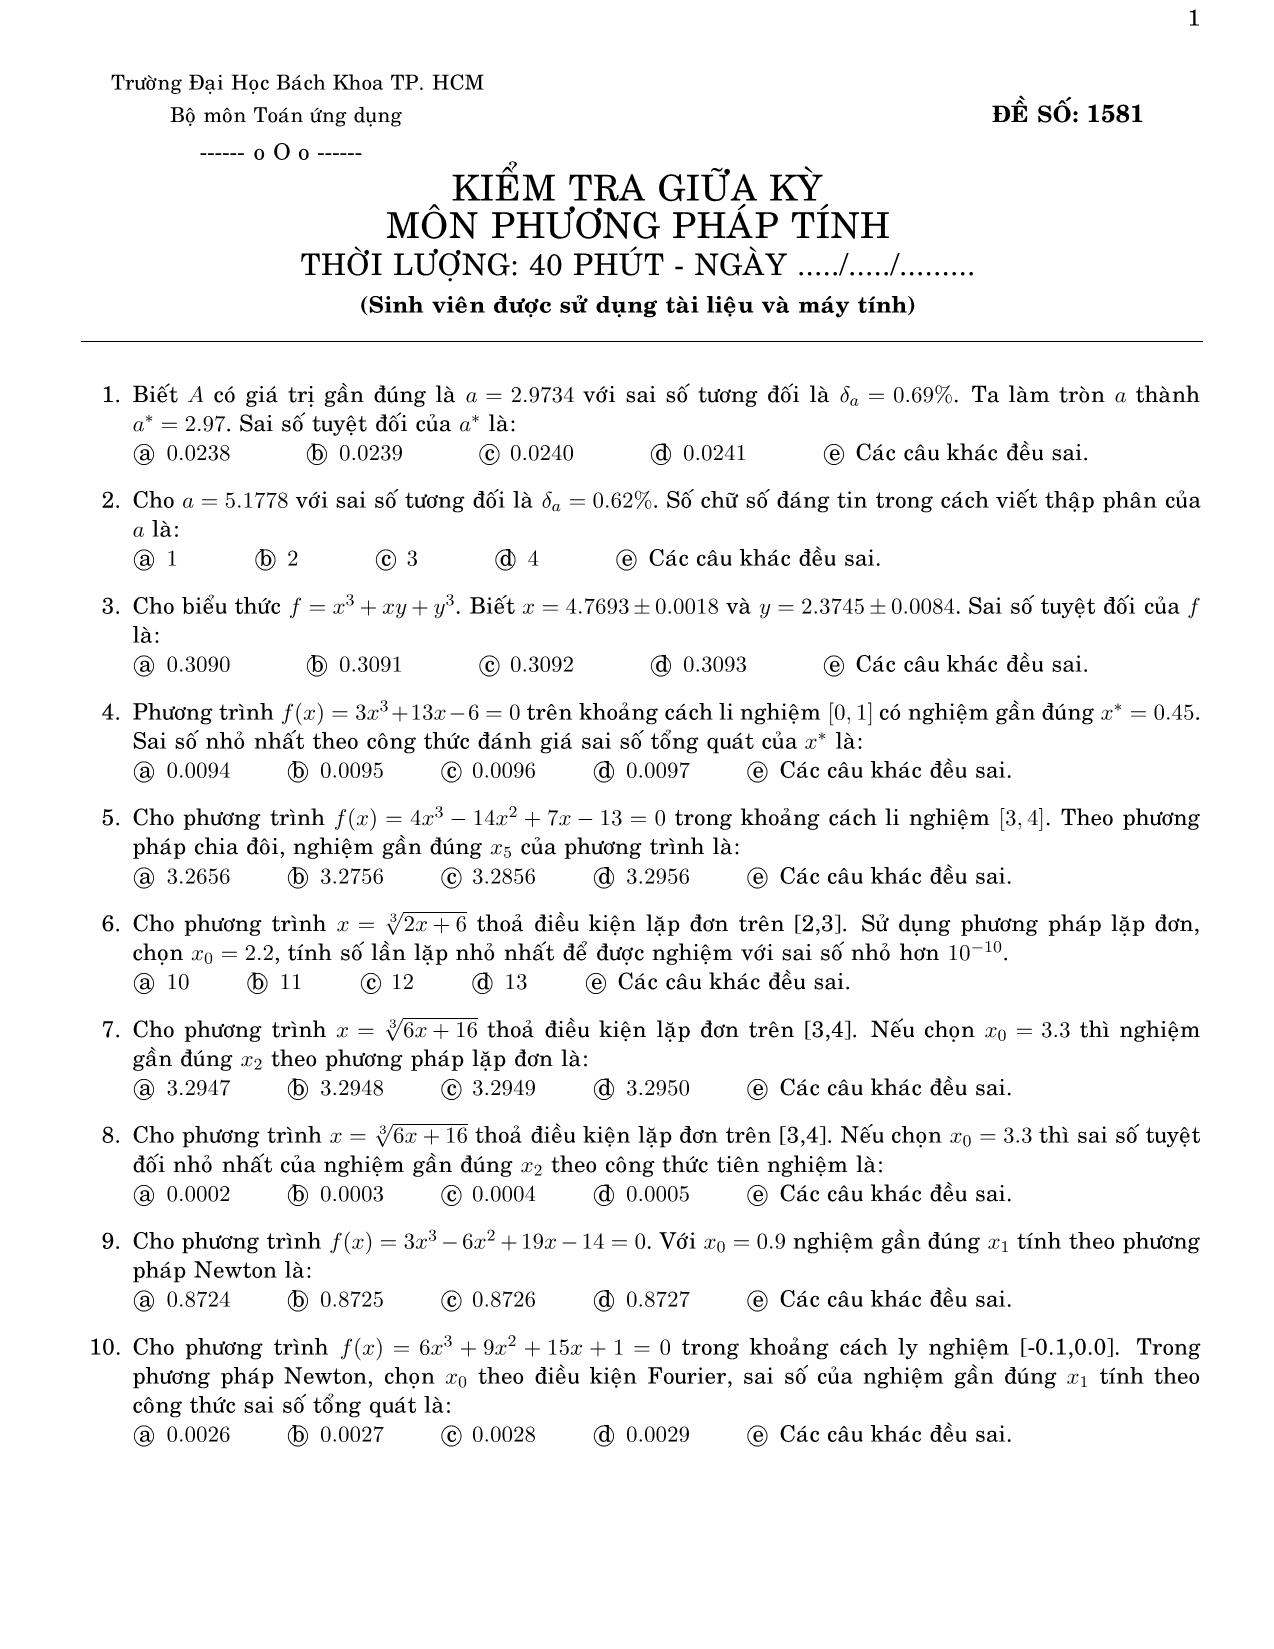 Đề kiểm tra giữa kỳ môn Phương pháp tính - Đề số 1581 - Đại học Bách khoa thành phố Hồ Chí Minh trang 1